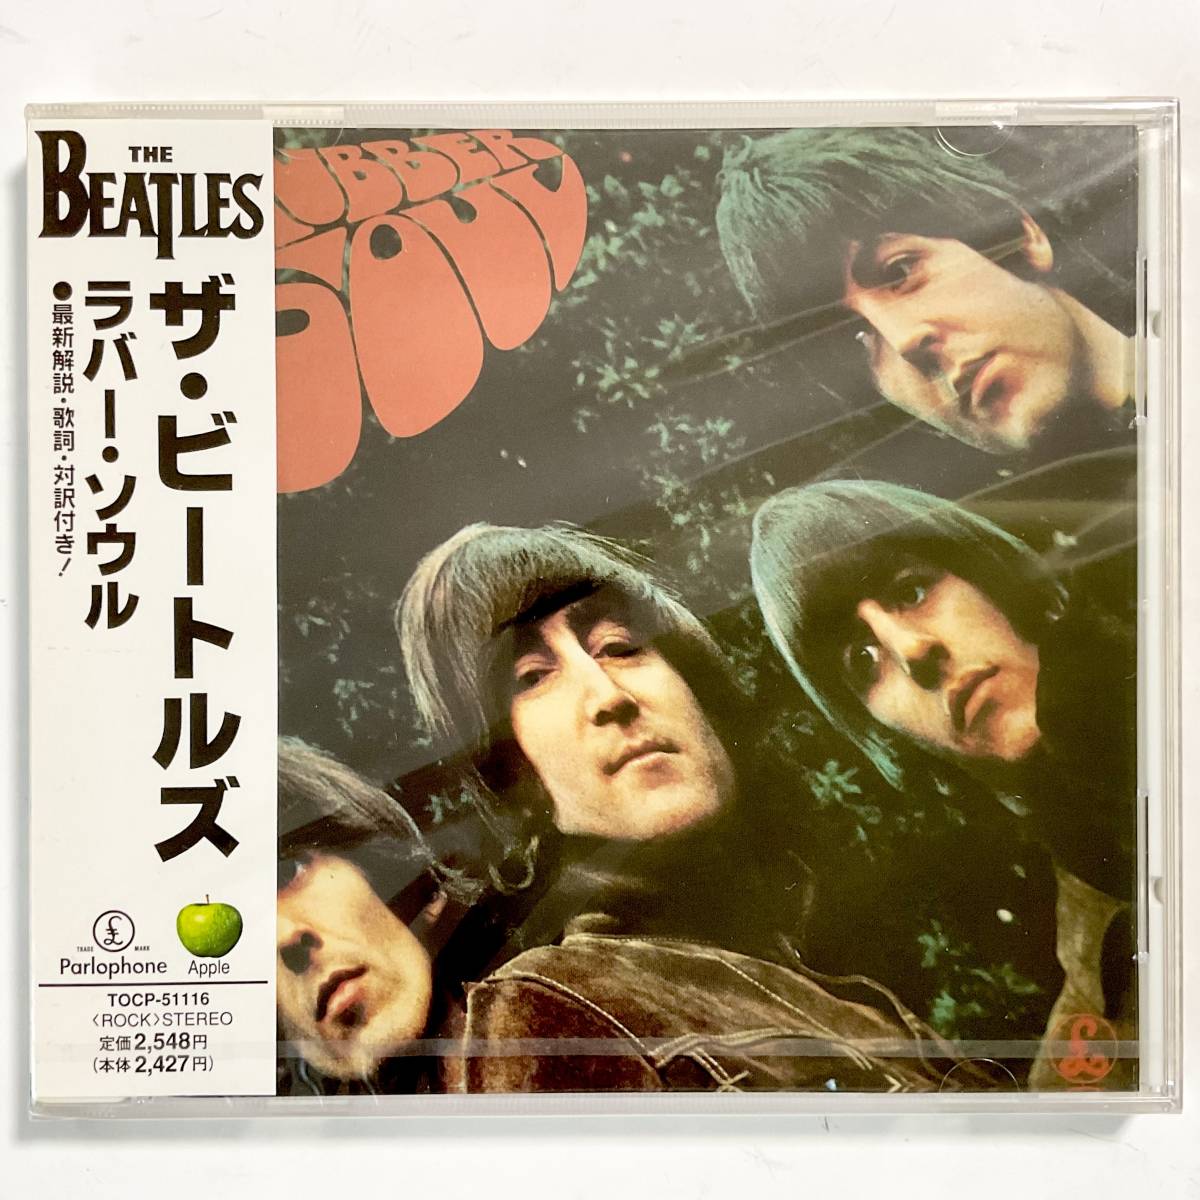  нераспечатанный CD THE BEATLES The * Beatles / Raver * душа * выгорел, выцветание есть M017